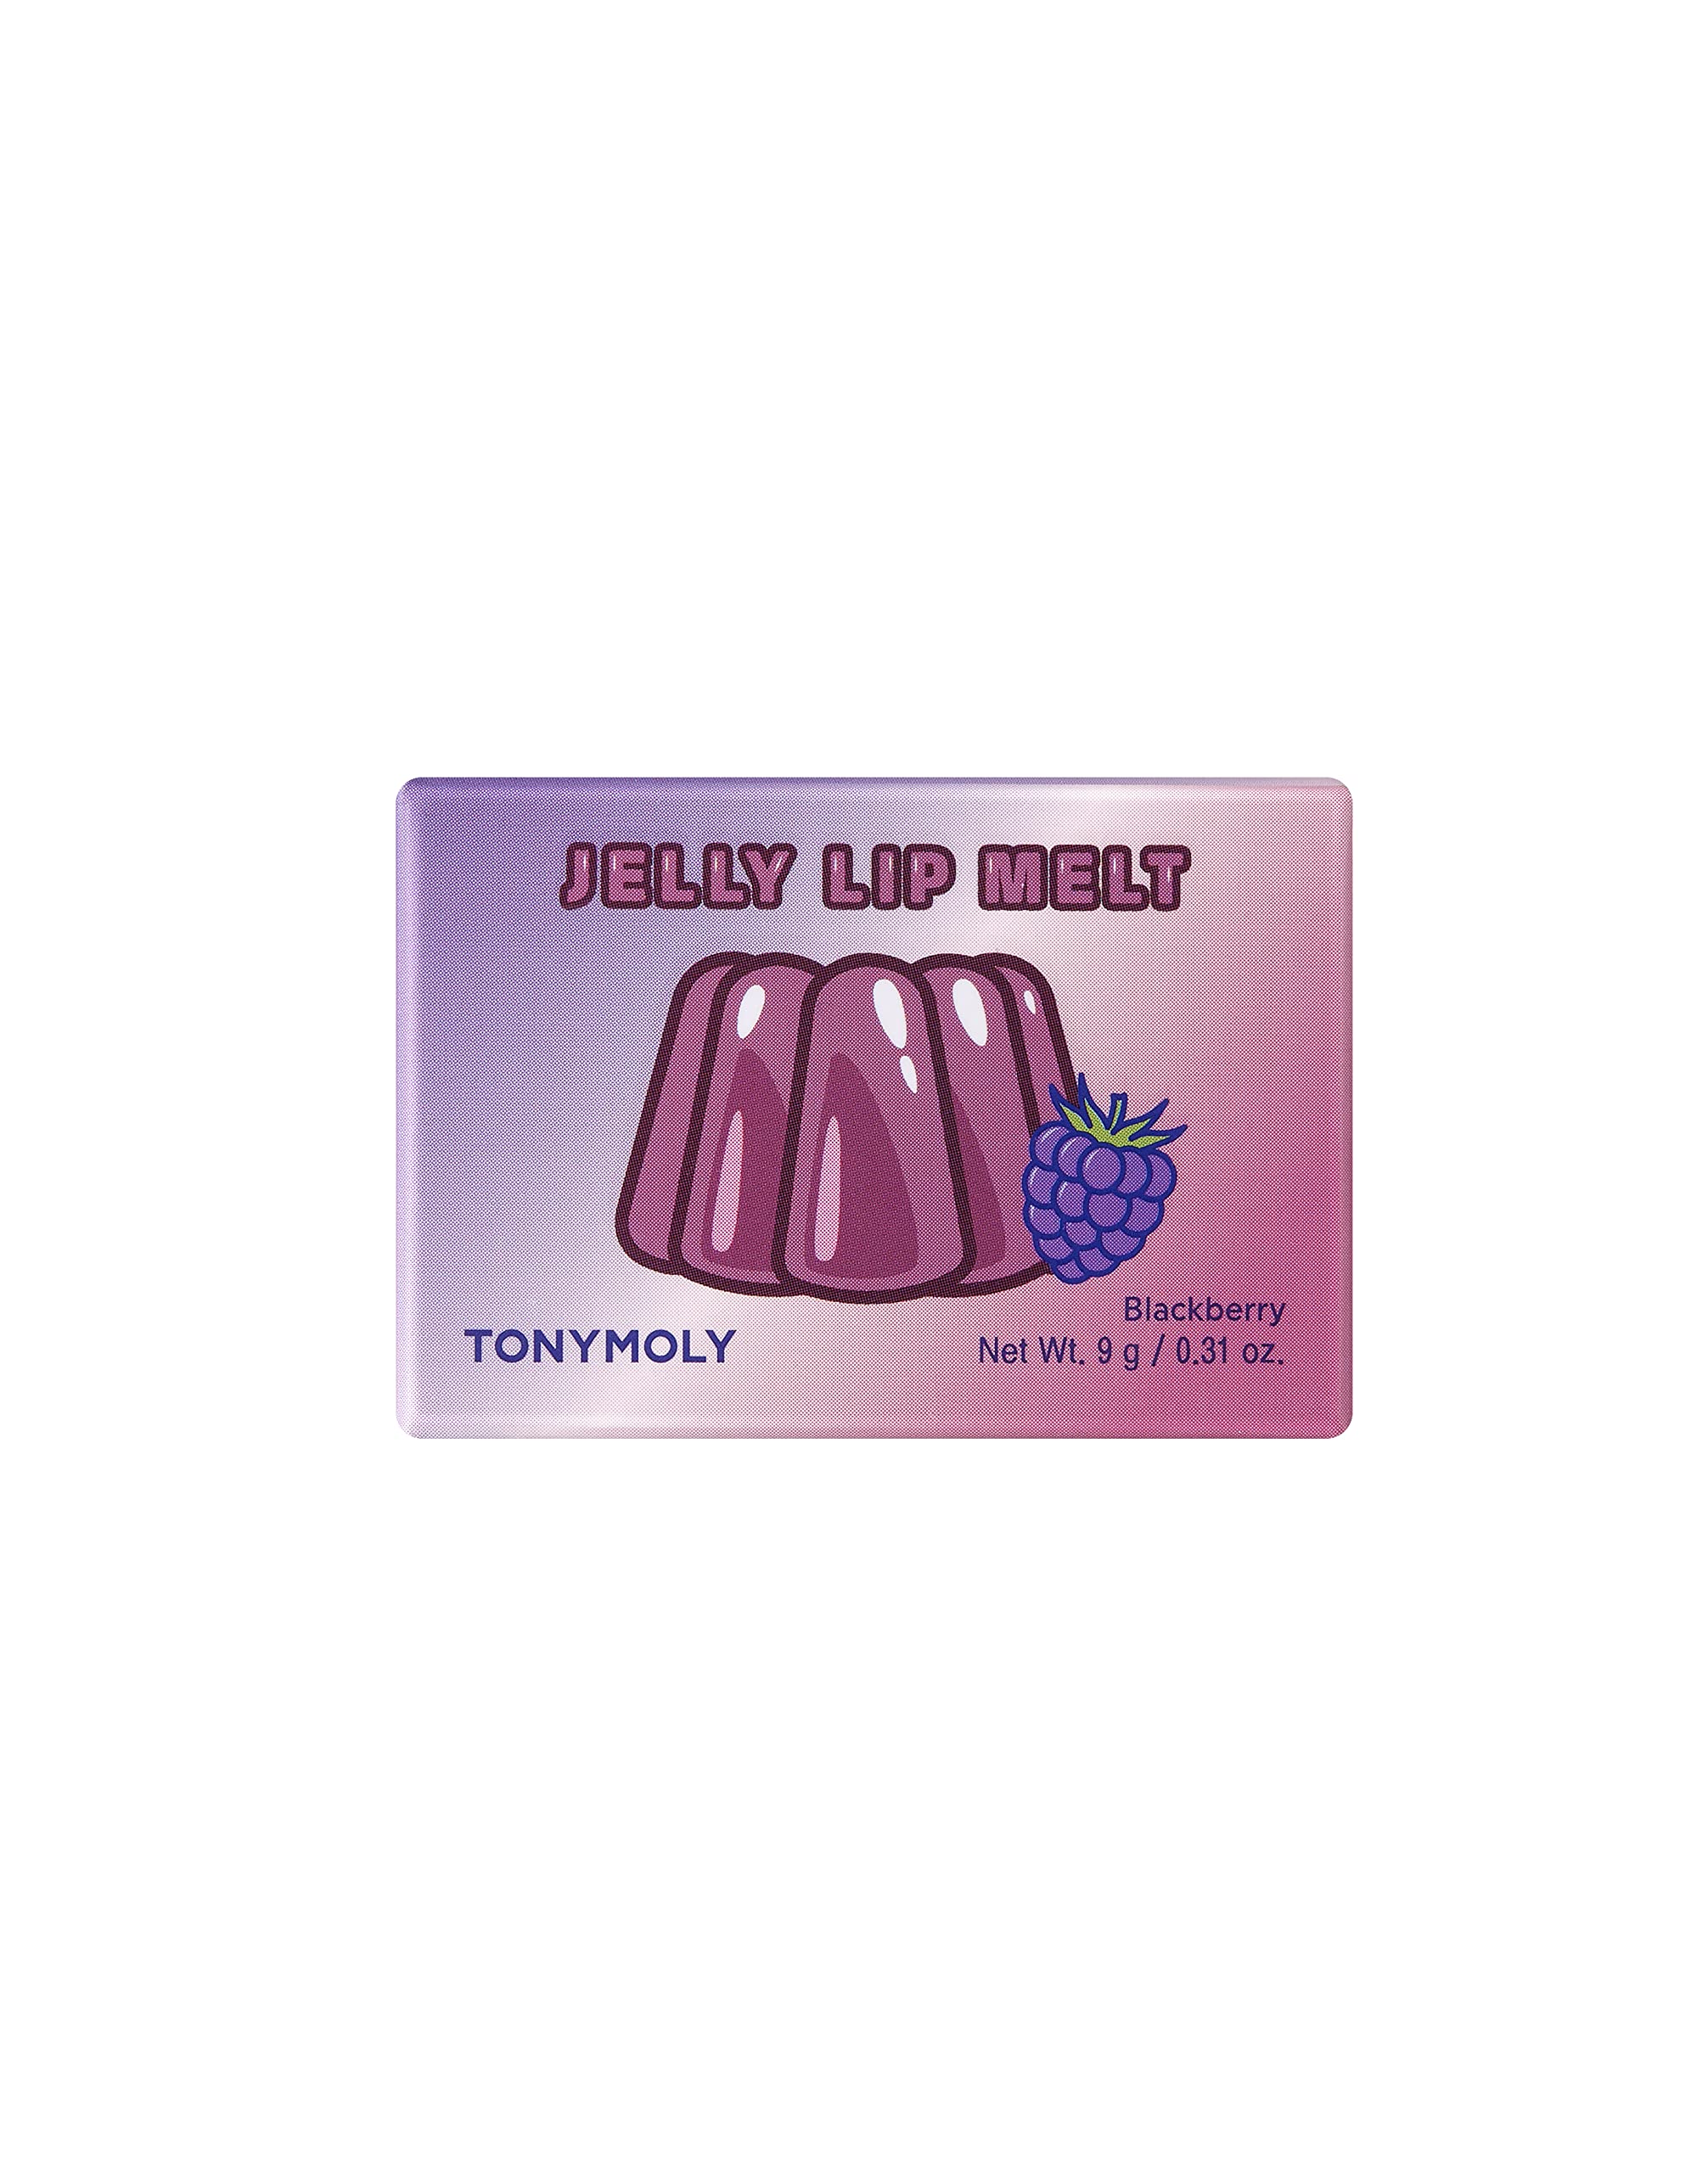 TONYMOLY Jelly Lip Melt, Blackberry